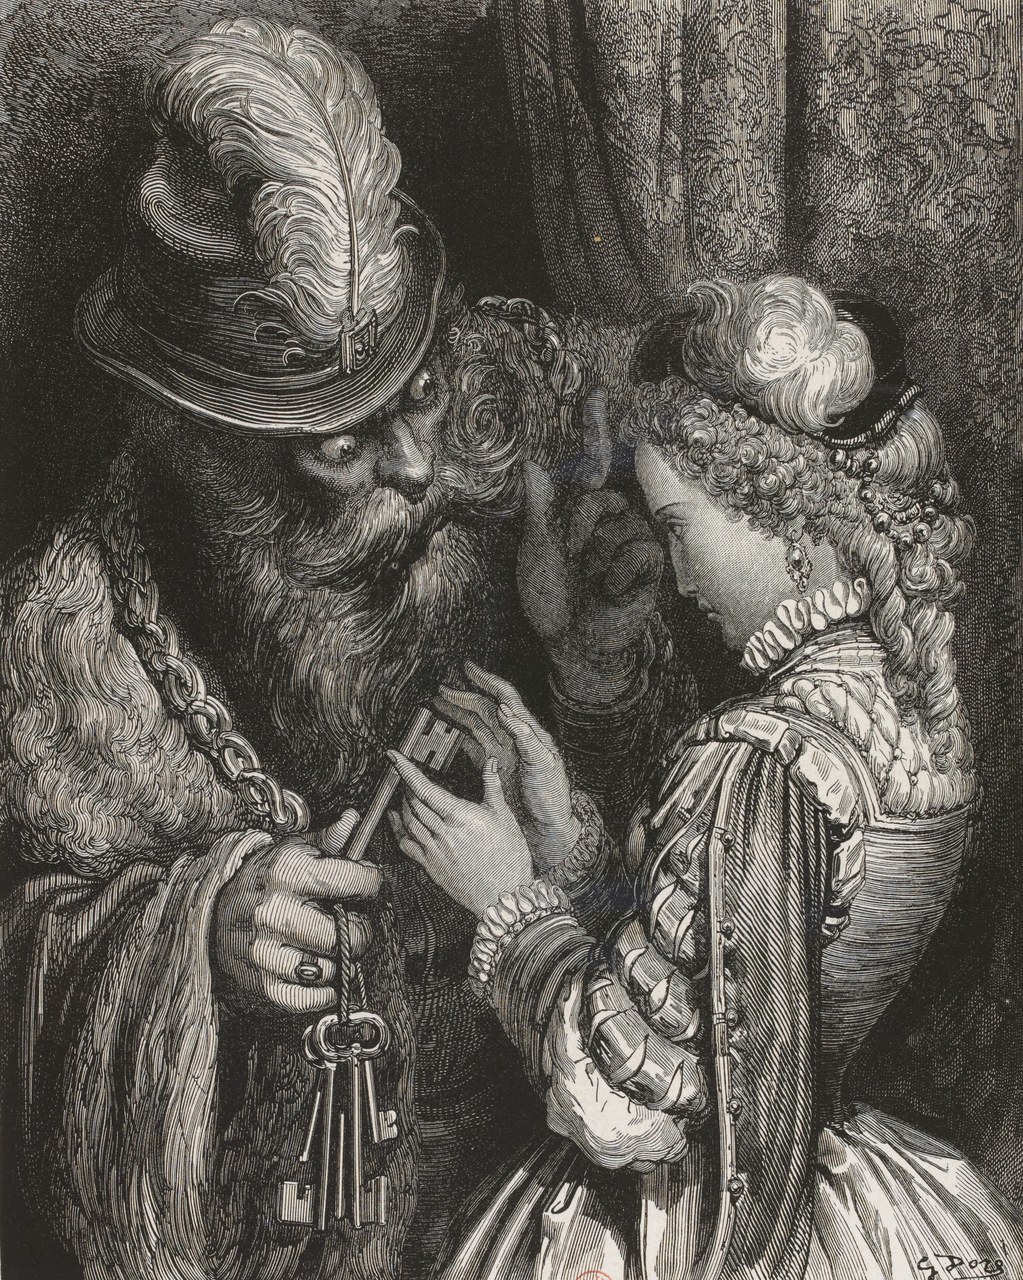 Fig.1 Gustave Dor&eacute;, S&rsquo;il vous arrive de l&rsquo;ouvrir, iul n&rsquo;y a rien que vous ne deviez attendre de ma col&egrave;re, 1862.
